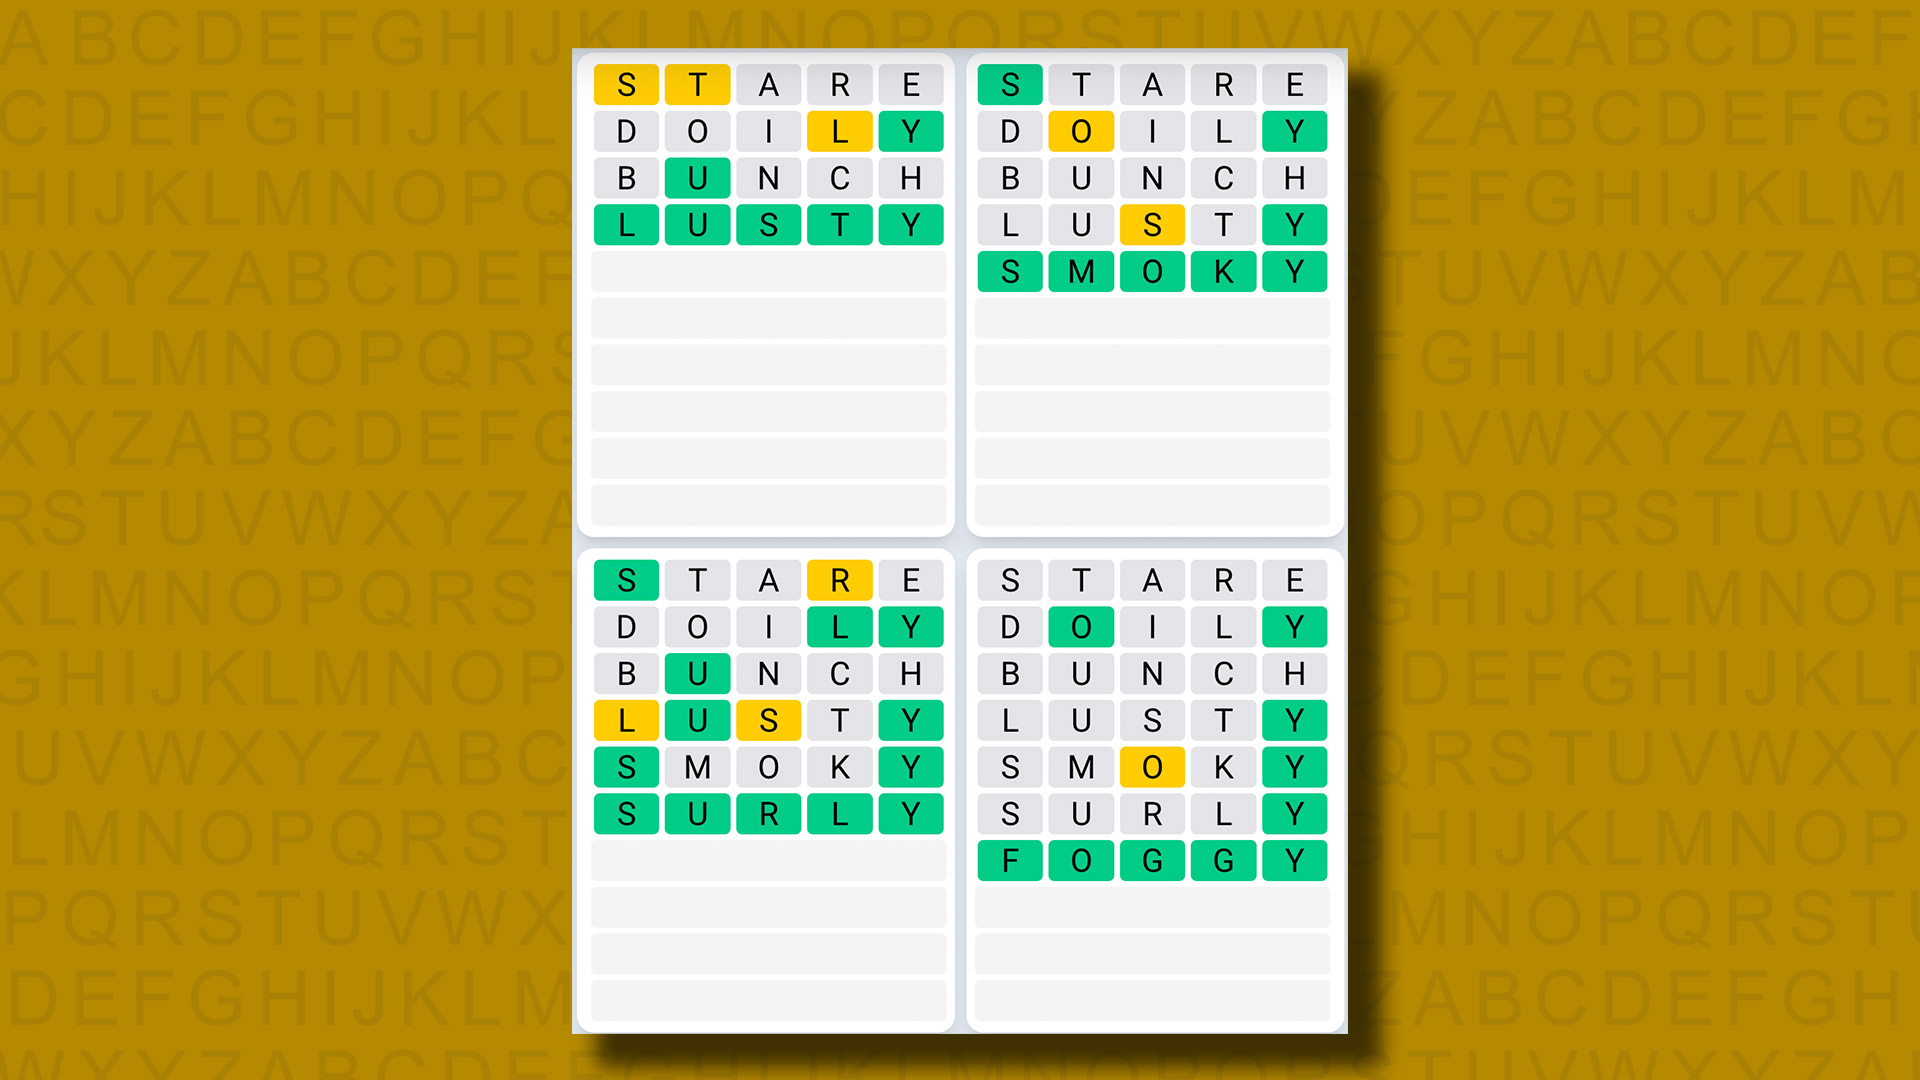 Ежедневная последовательность ответов Quordle для игры 825 на желтом фоне